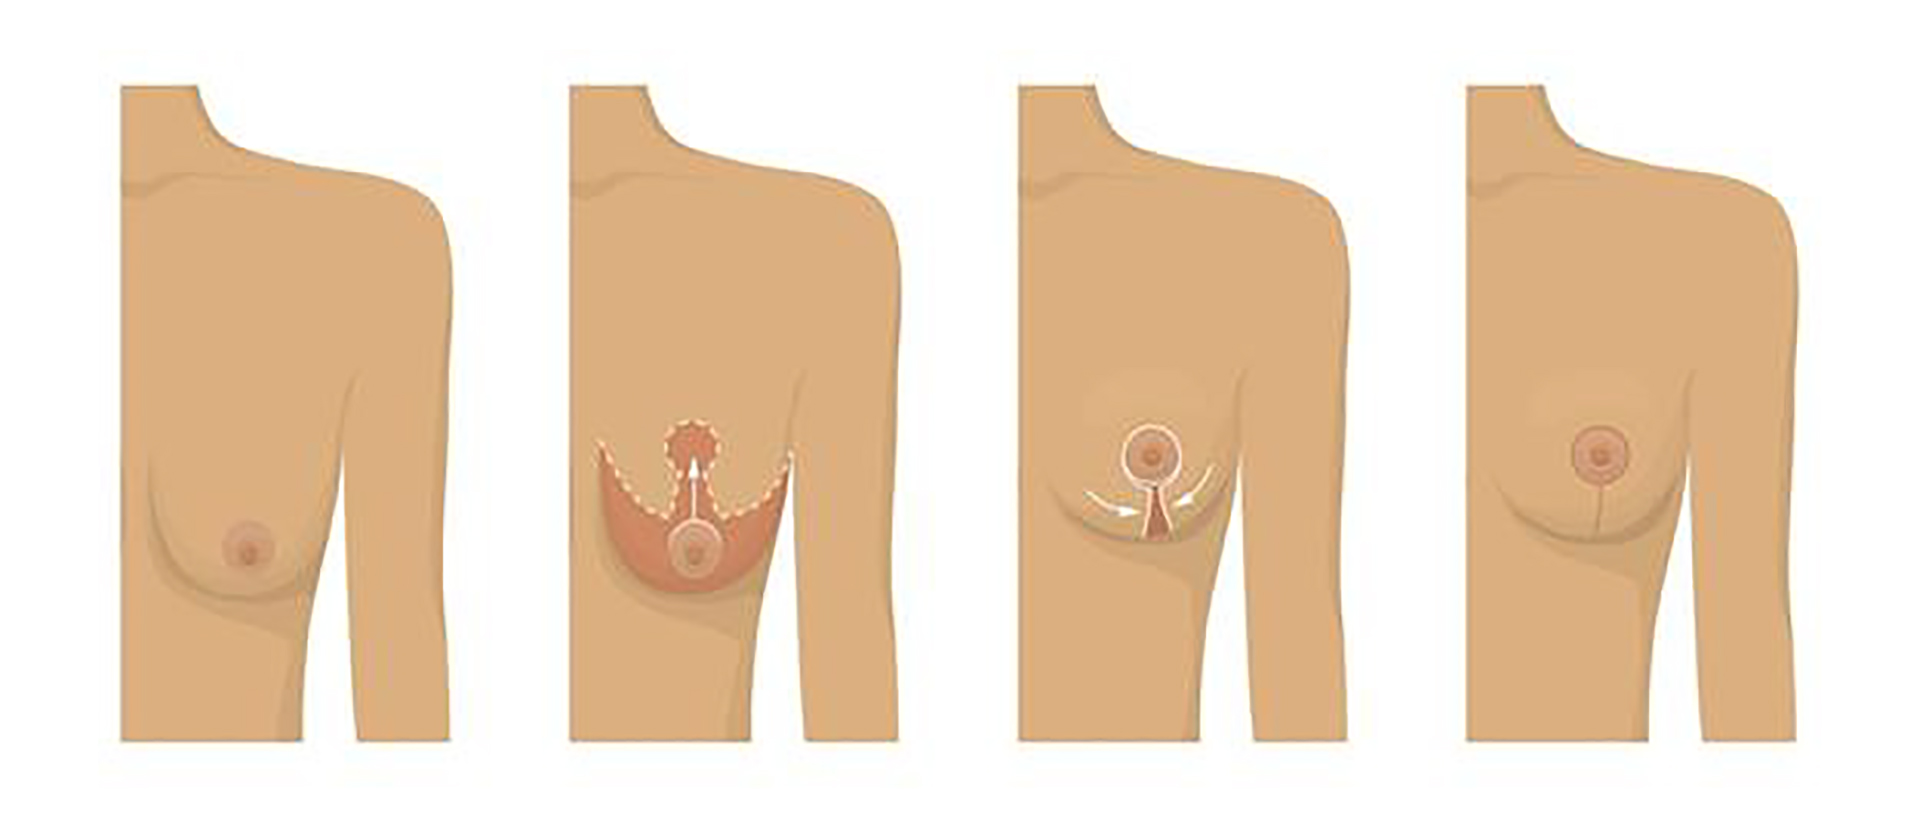 Nâng ngực sa trễ là phương pháp phẫu thuật nhằm loại bỏ da và mỡ thừa, đồng thời kéo căng các mô và cơ ở ngực lên.